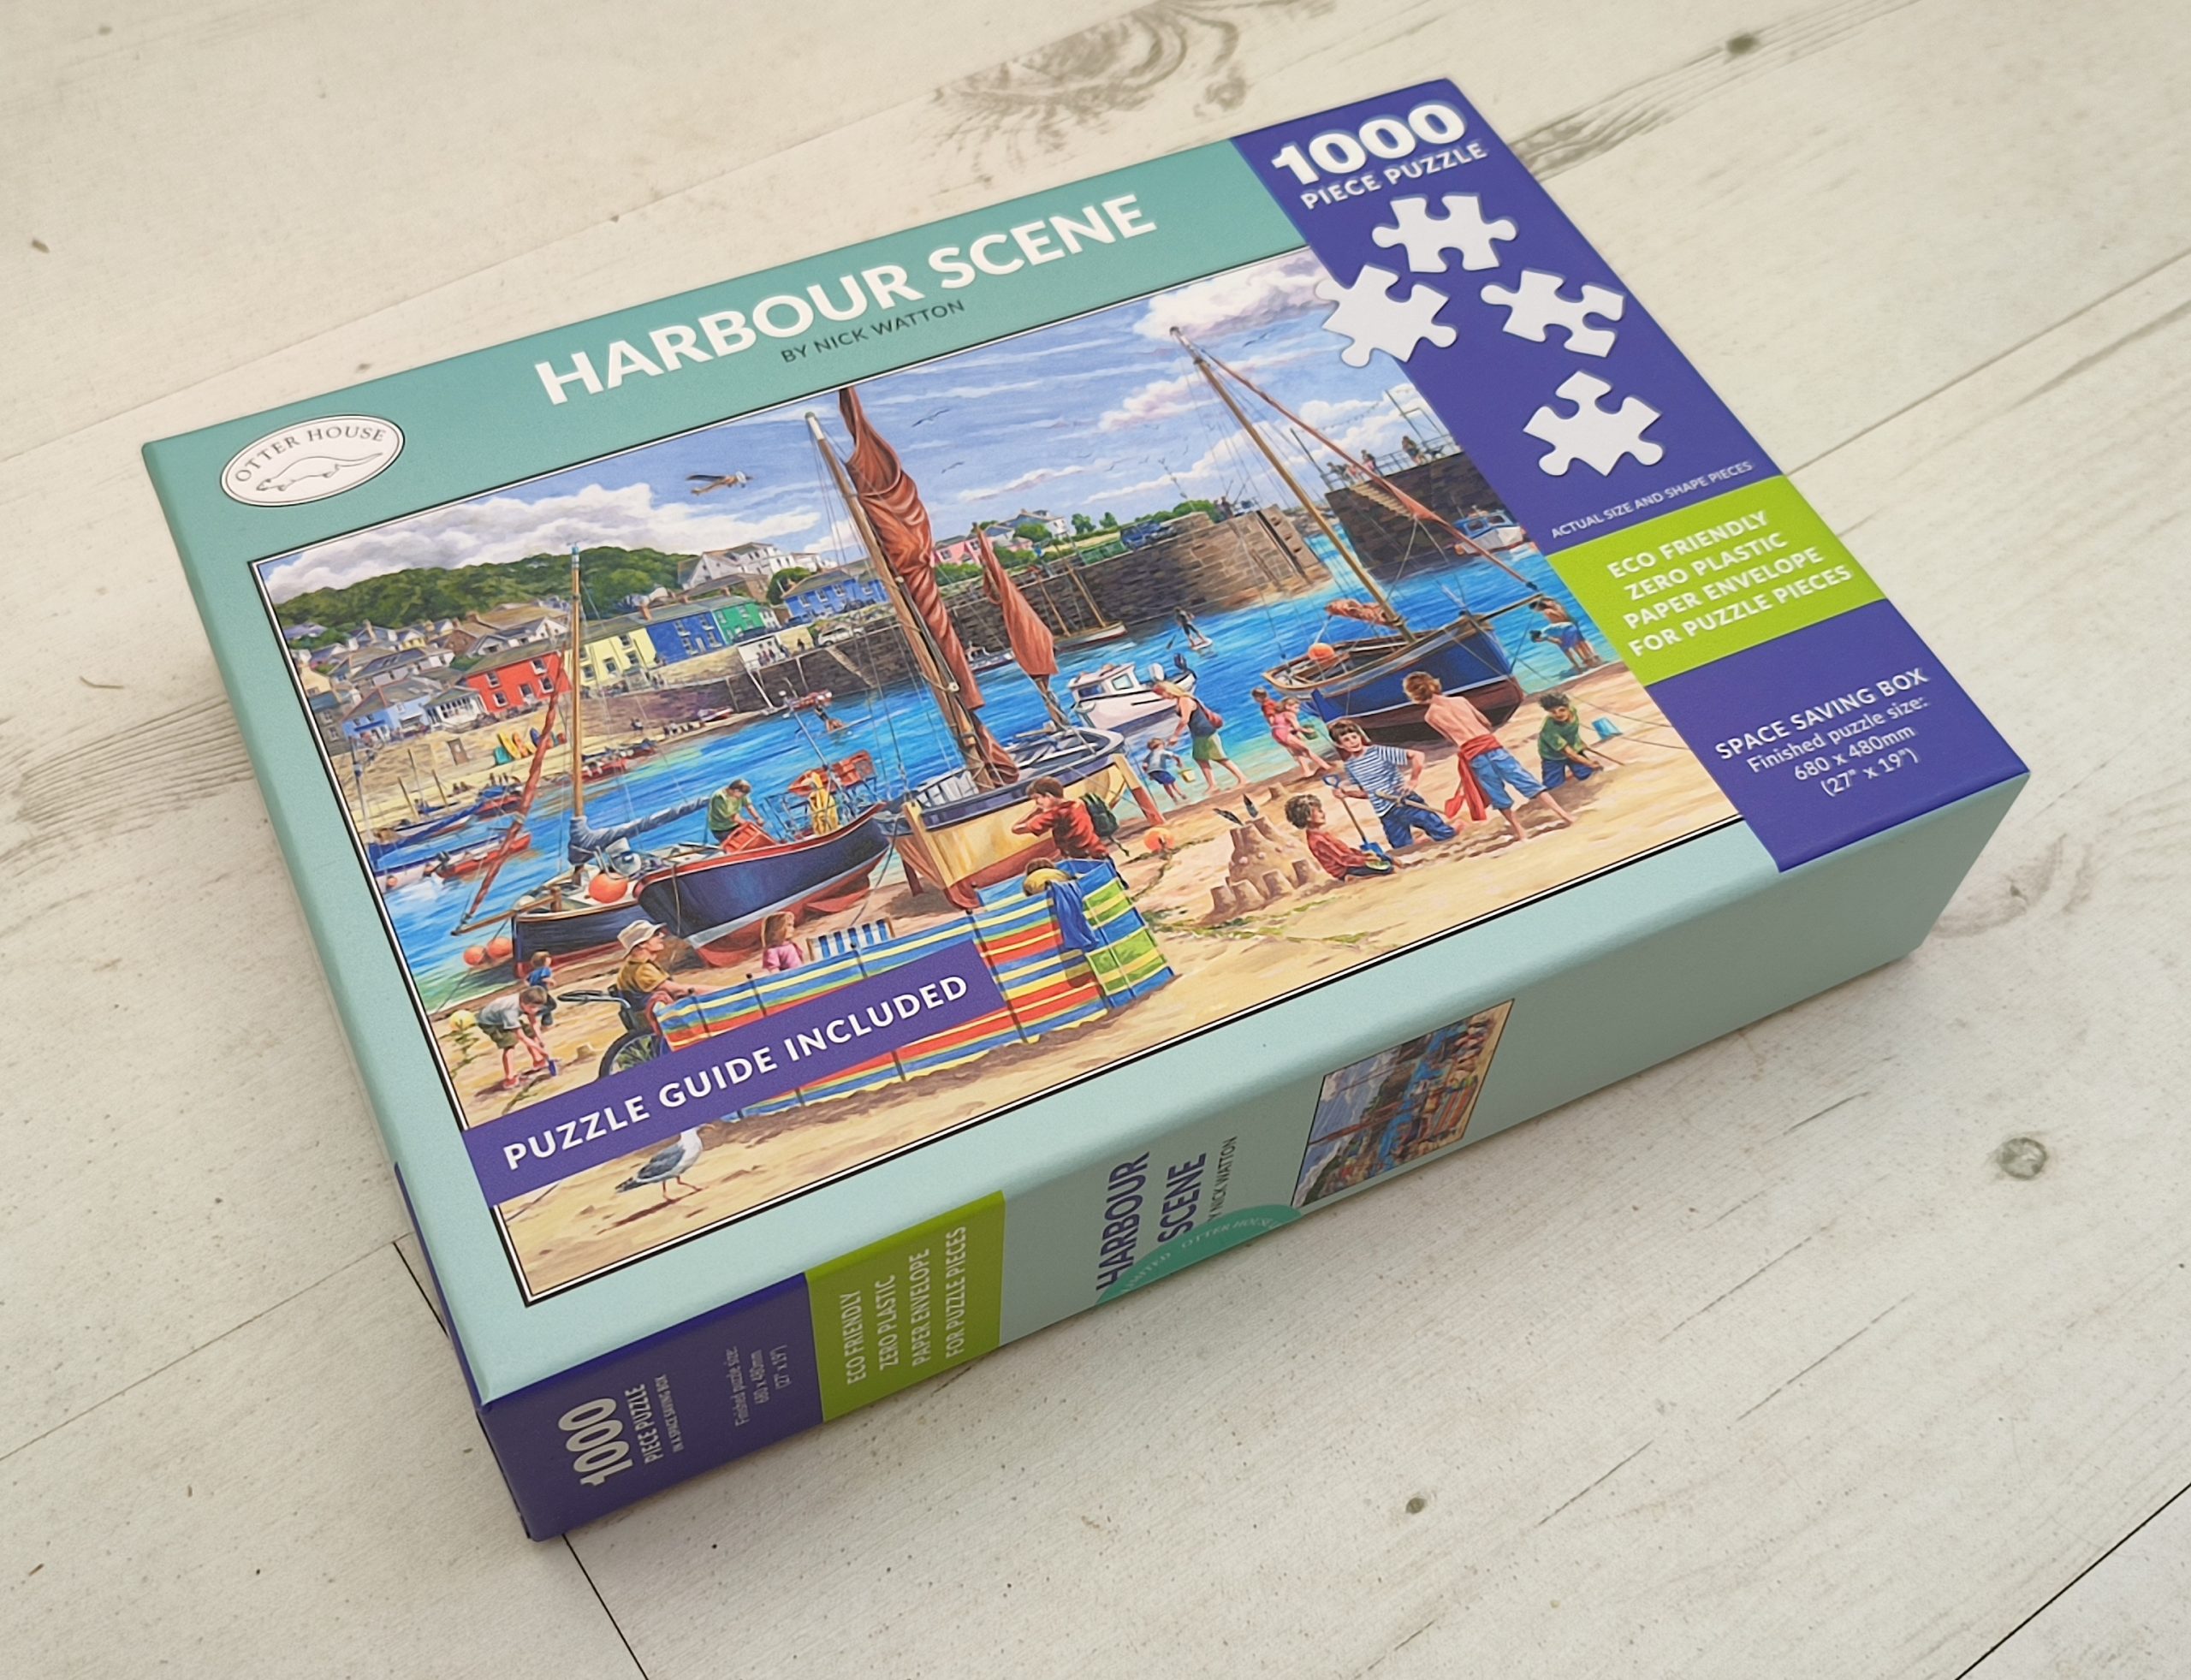 Harbour scene jigsaw box